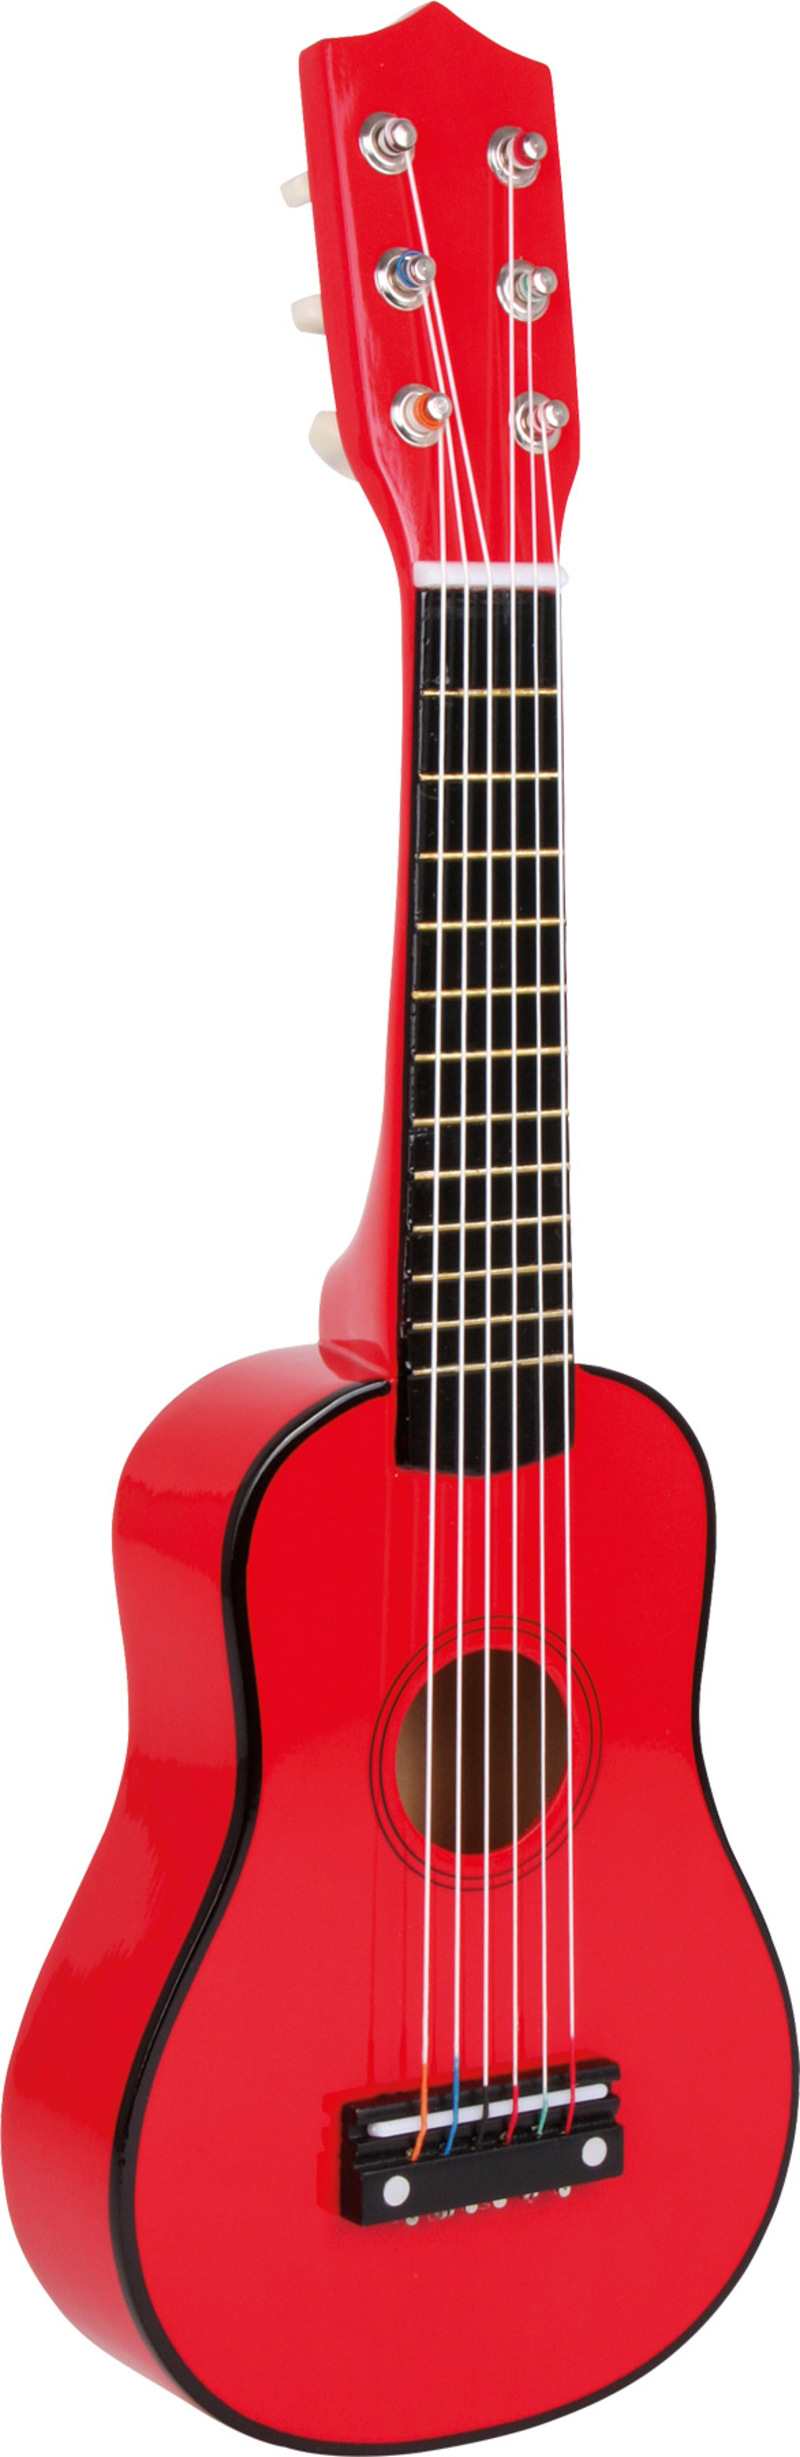 Guitar, red